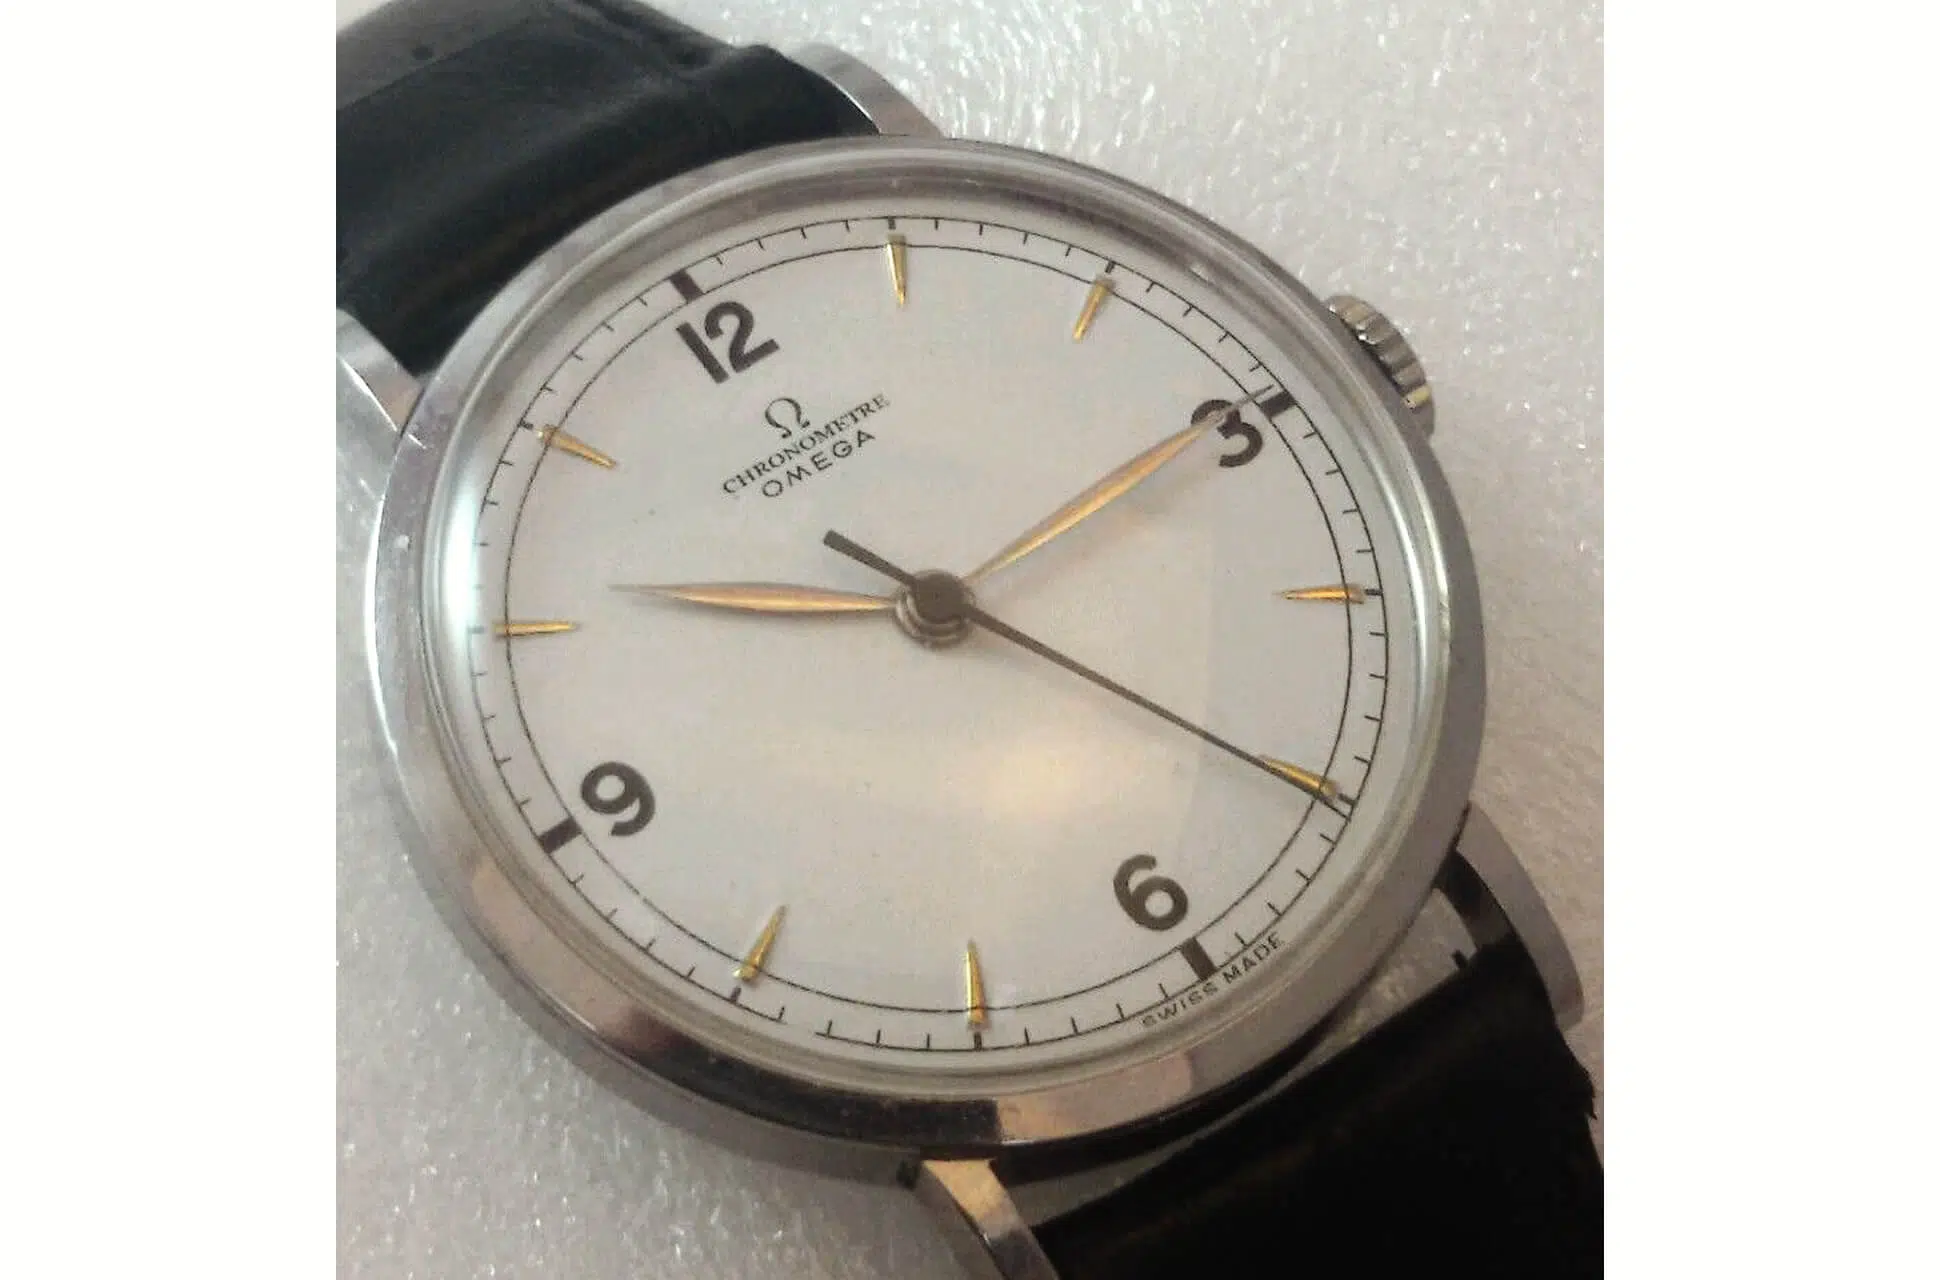 Un exemple de montre avec cadran retravaillé